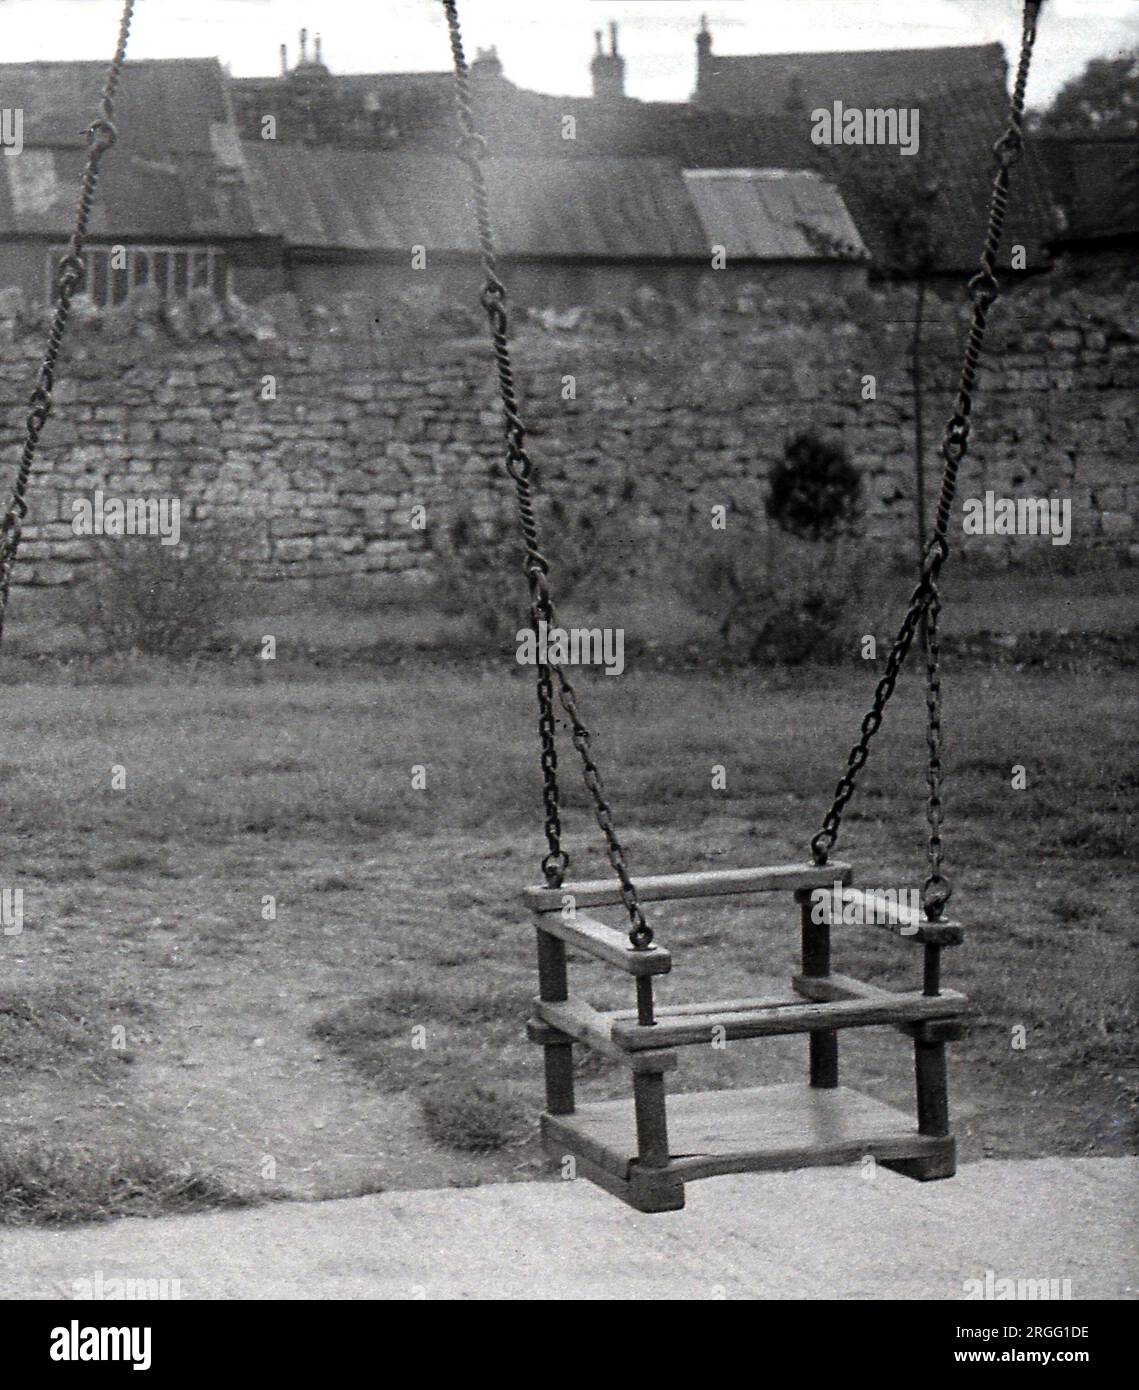 1935, historisch, ein hölzerner Sitz, Kettenschaukel, England, UK. Spielgeräte für Kinder wie Schaukeln wurden in der viktorianischen Ära und darüber hinaus beliebt, da Gesetze sie daran hindern, zu arbeiten, bedeuteten, dass sie mehr Zeit zum Spielen im Freien hatten. Stockfoto